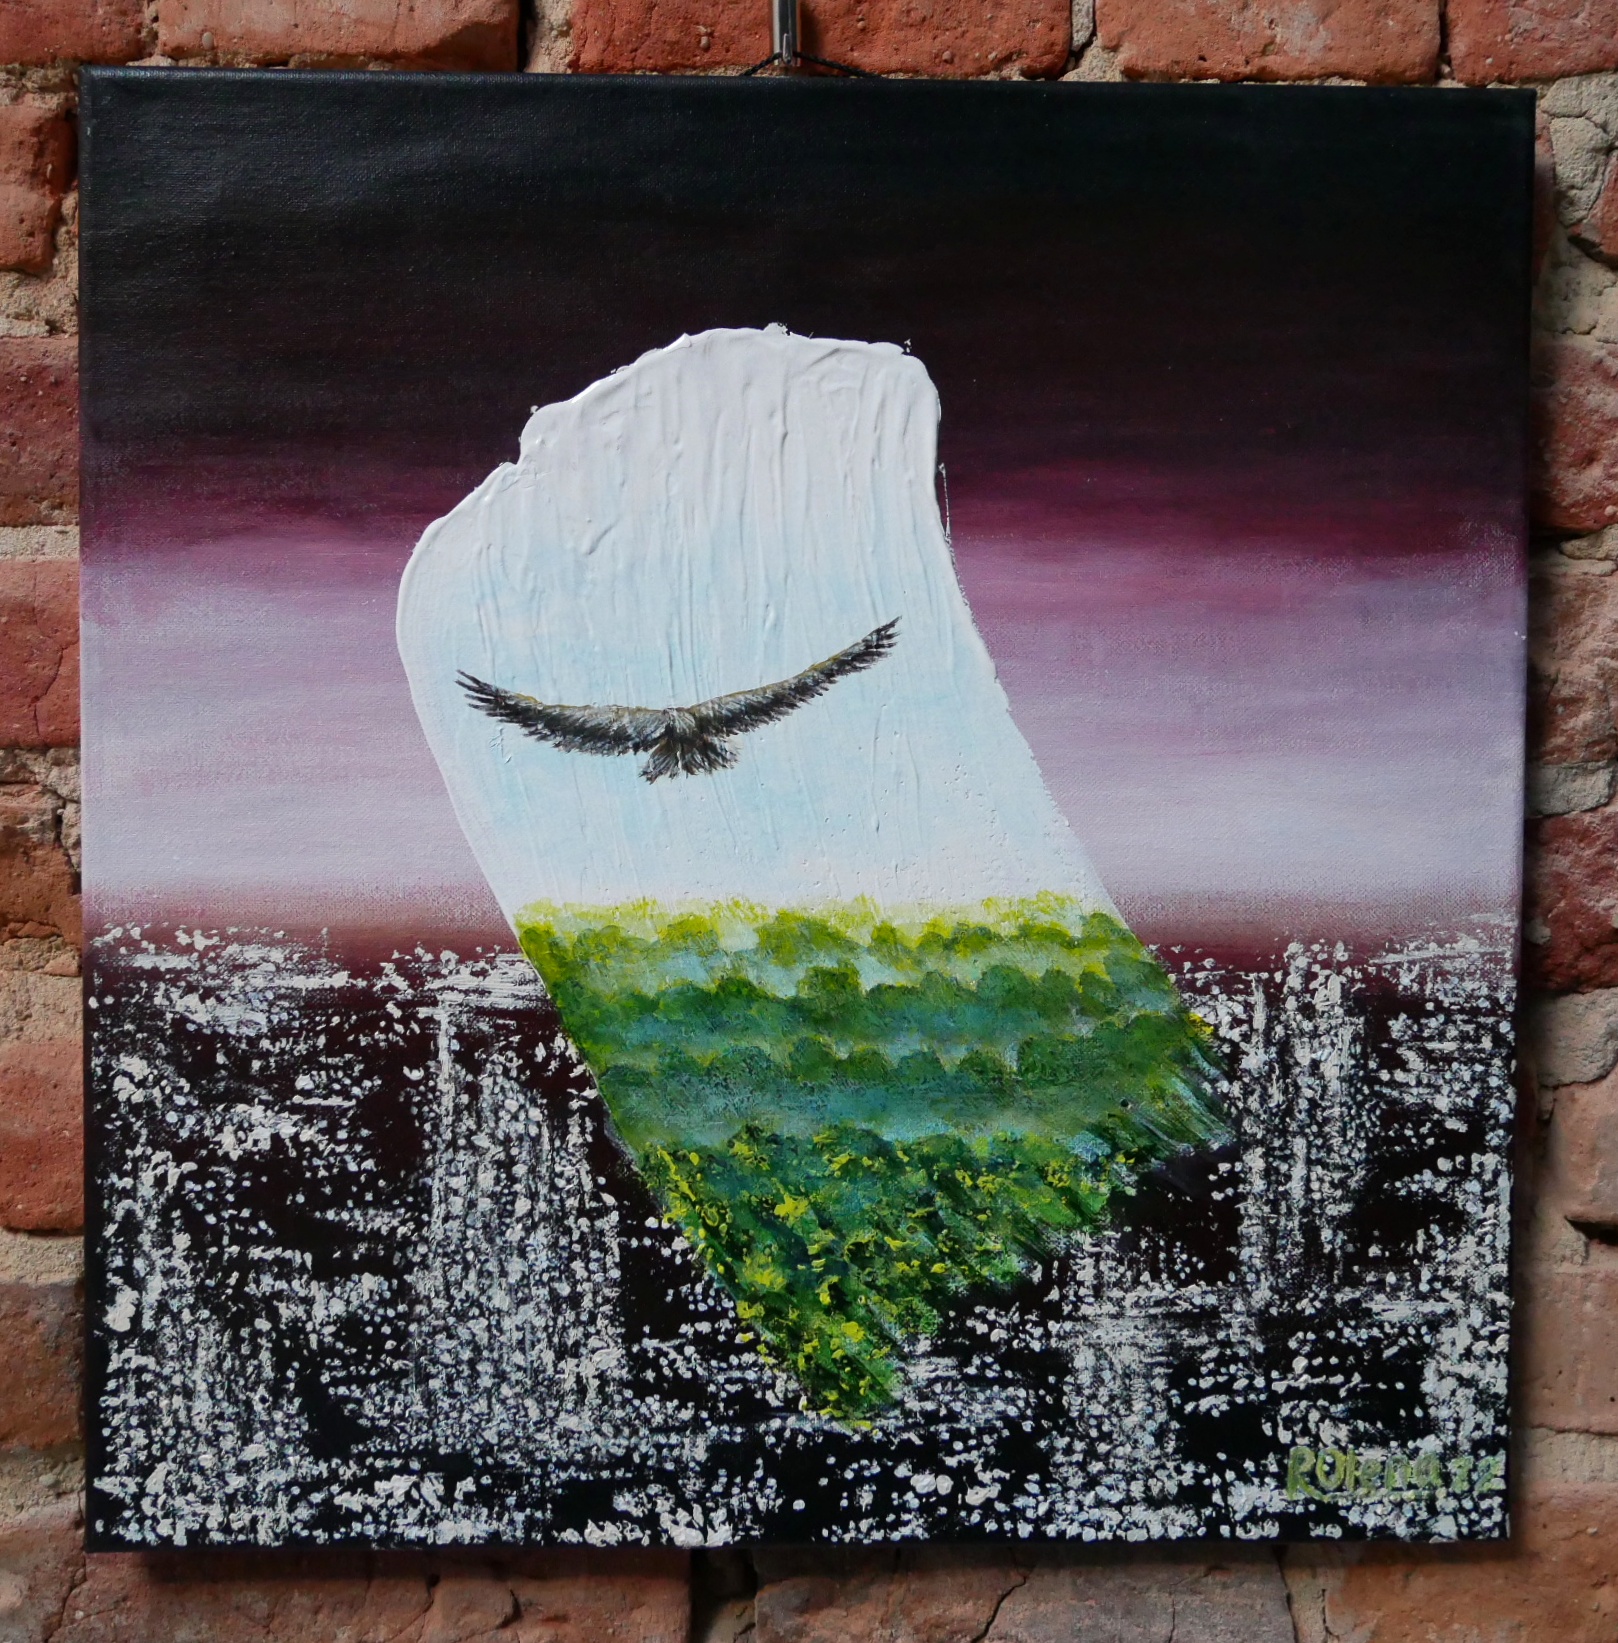 Obraz Oleny Radczenko przedstawiający krajobraz zniszczonego miasta z lecacym nad nim ptakiem